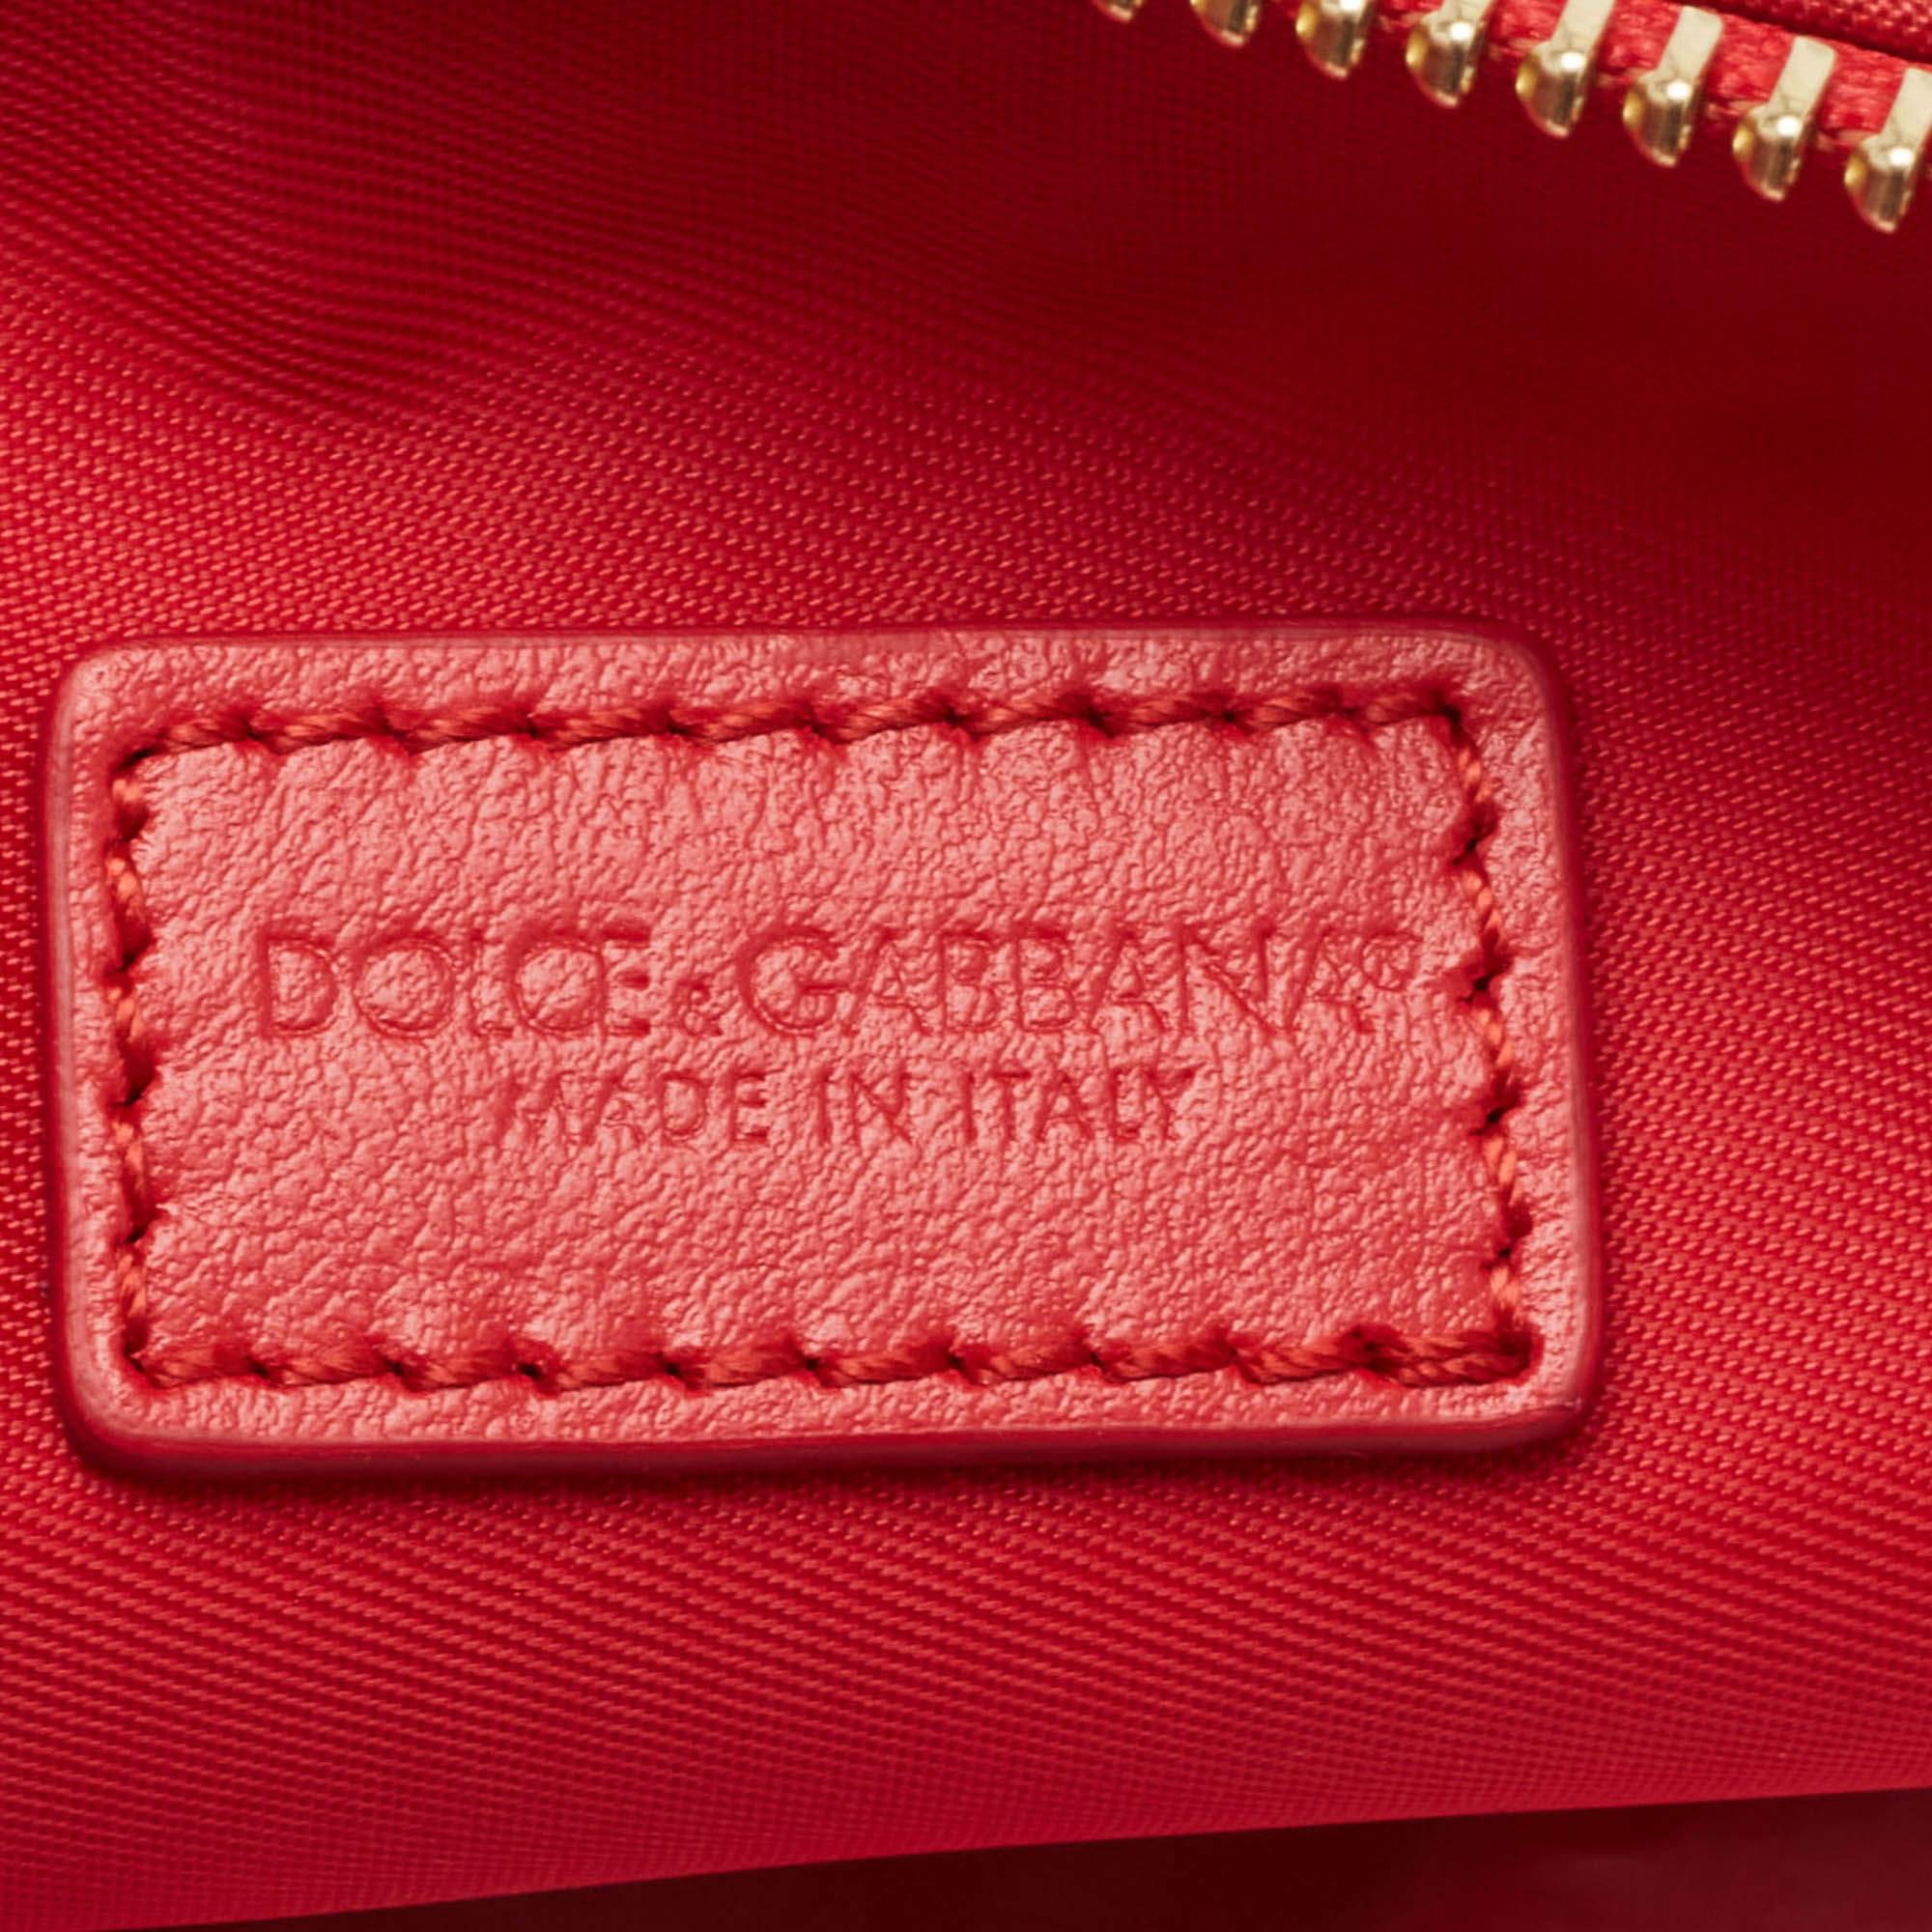 Dolce & Gabbana Multicolor Print Nylon Zip Pouch 3